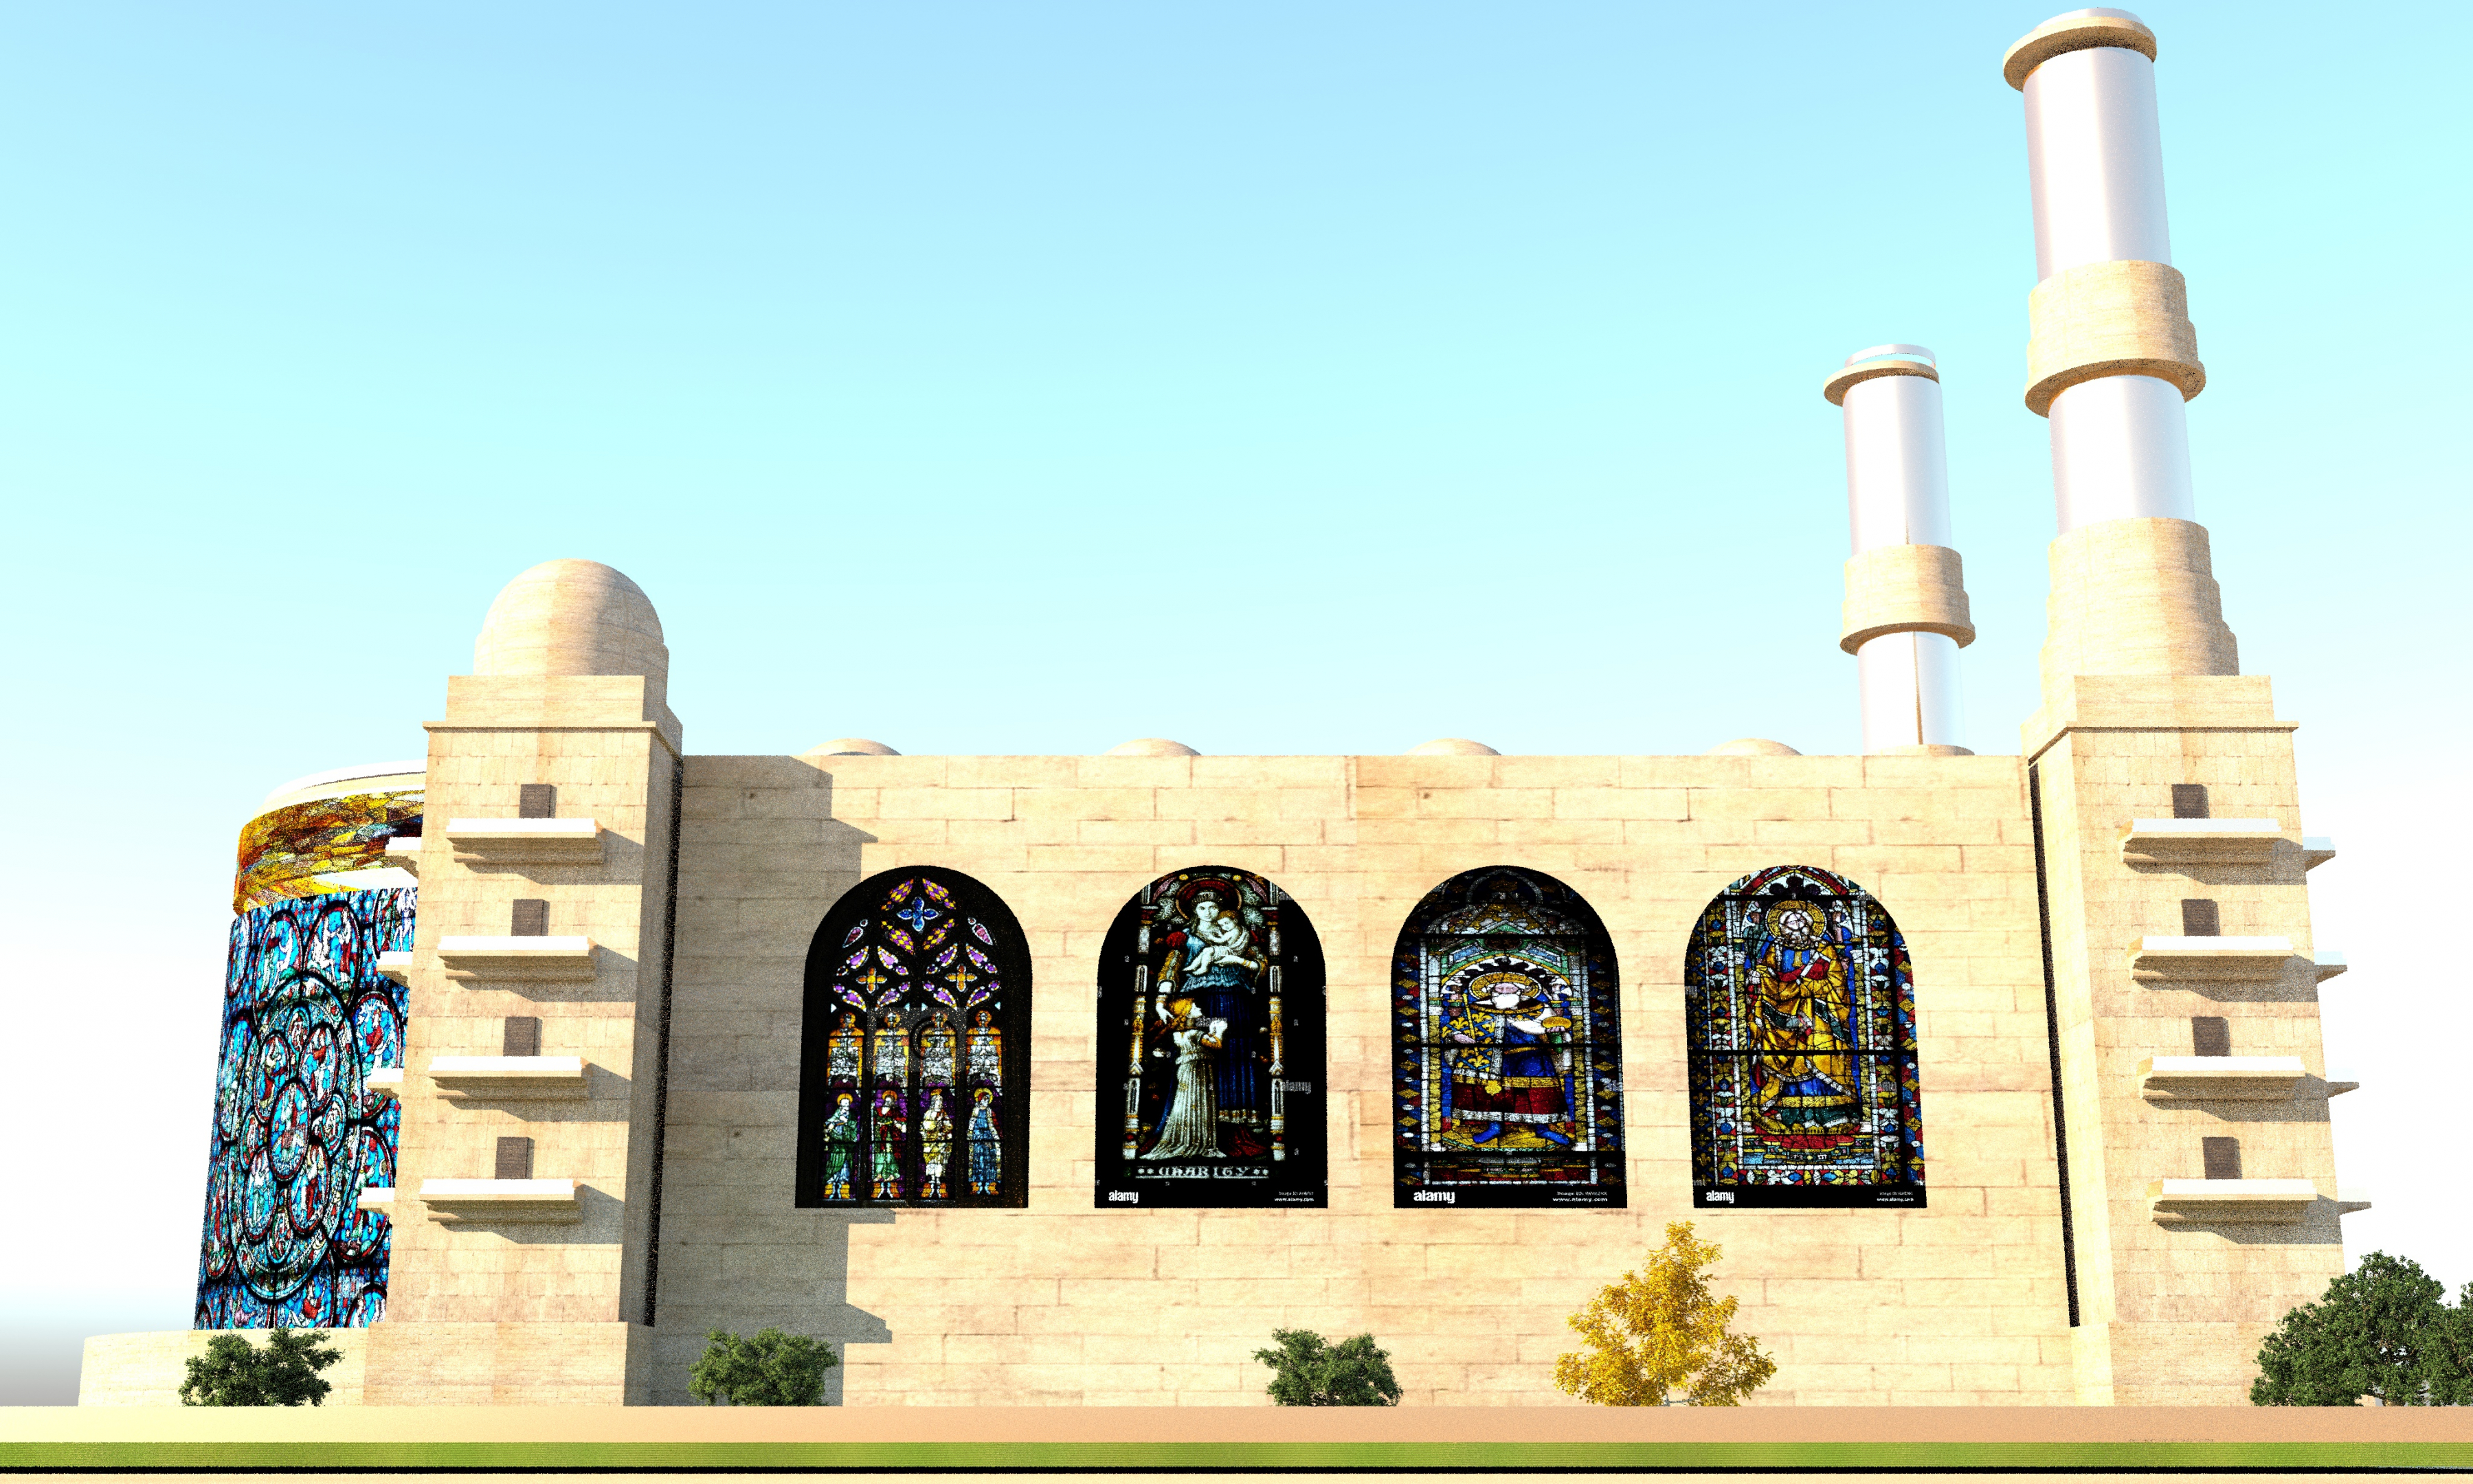 Catedral fictícia com torres douradas em AutoCAD vray 3.0 imagem